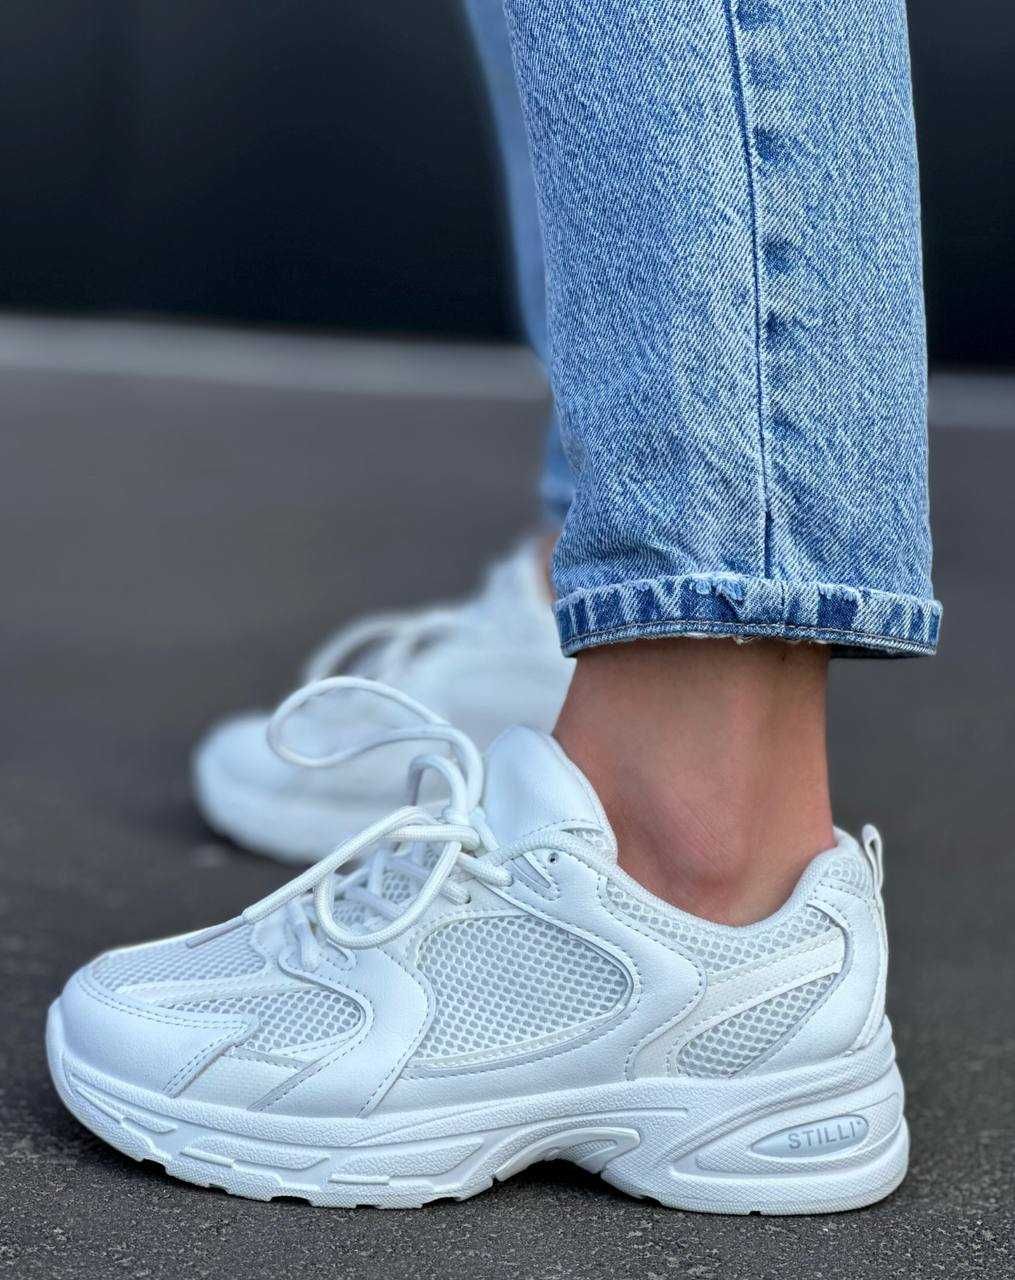 Жіночі кросівки білого кольору / Женские кроссовки белого цвета